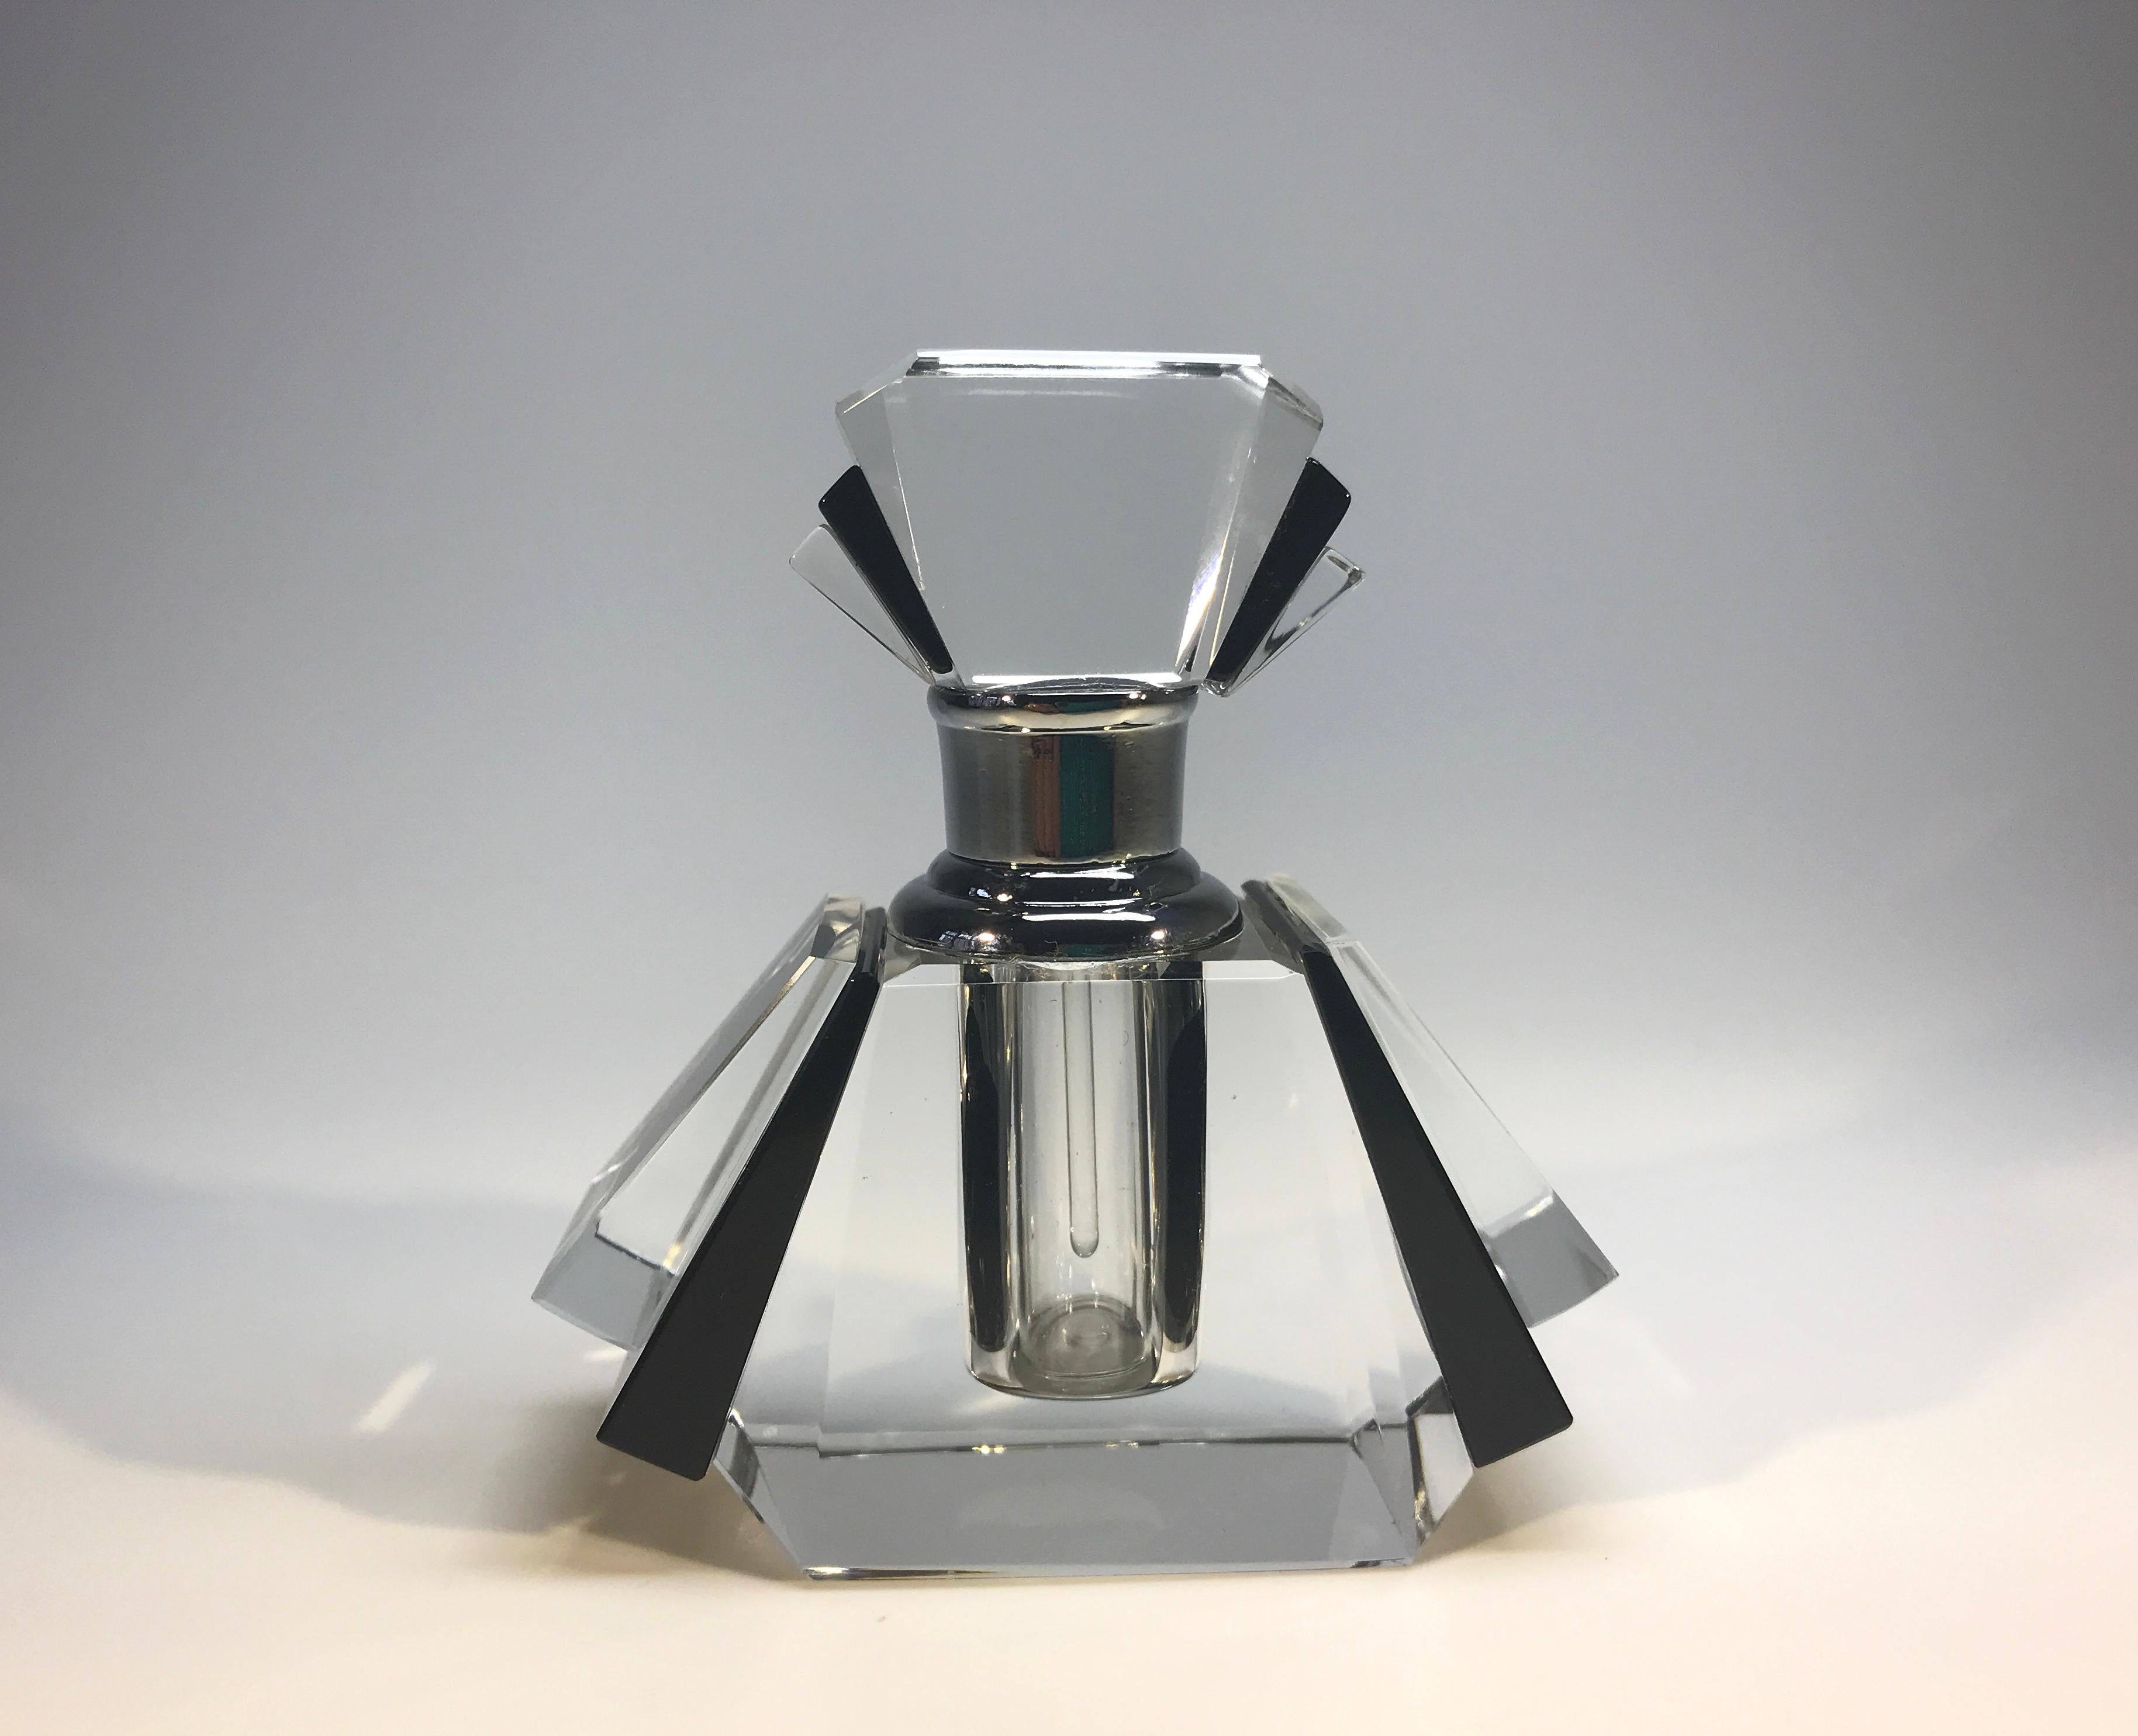 Czech Exquisite, Classic Art Deco Black Crystal Perfume Bottle Flacon